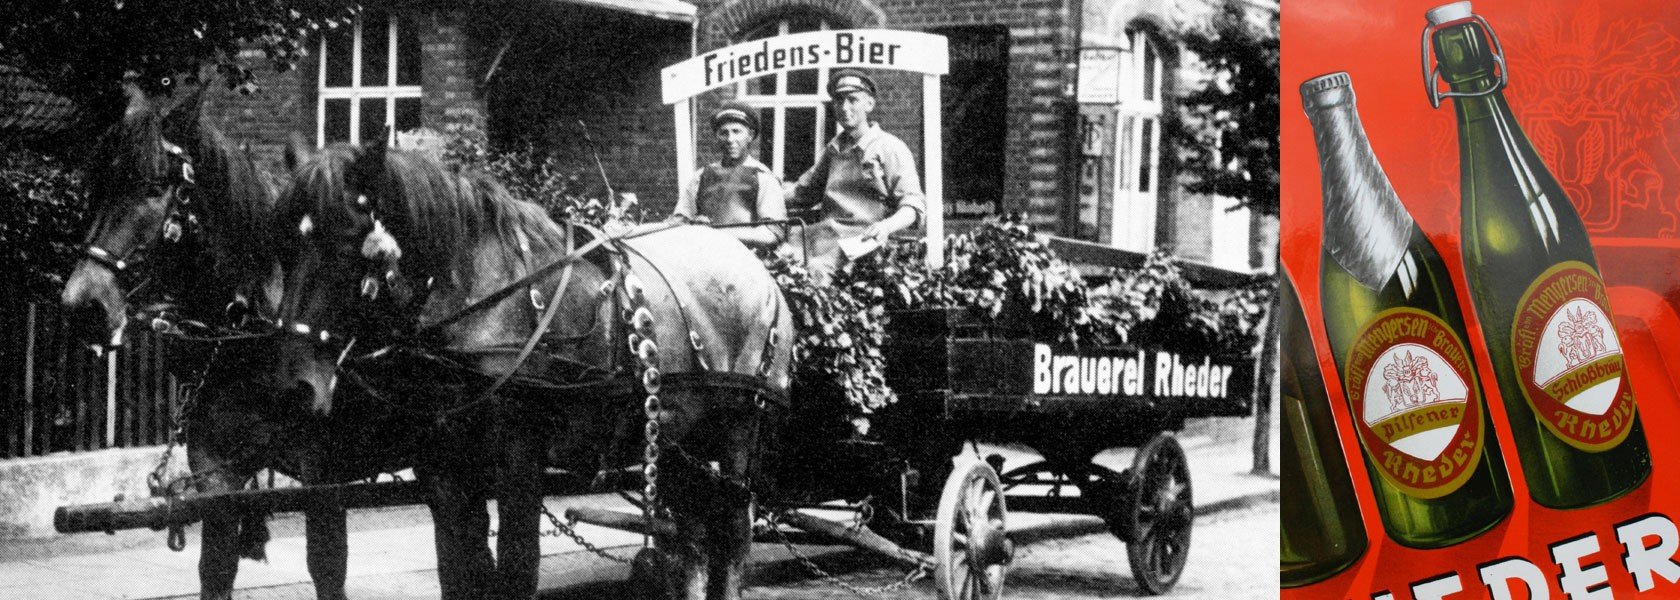 Schloßbrauerei Rheder Brauerei aus Deutschland